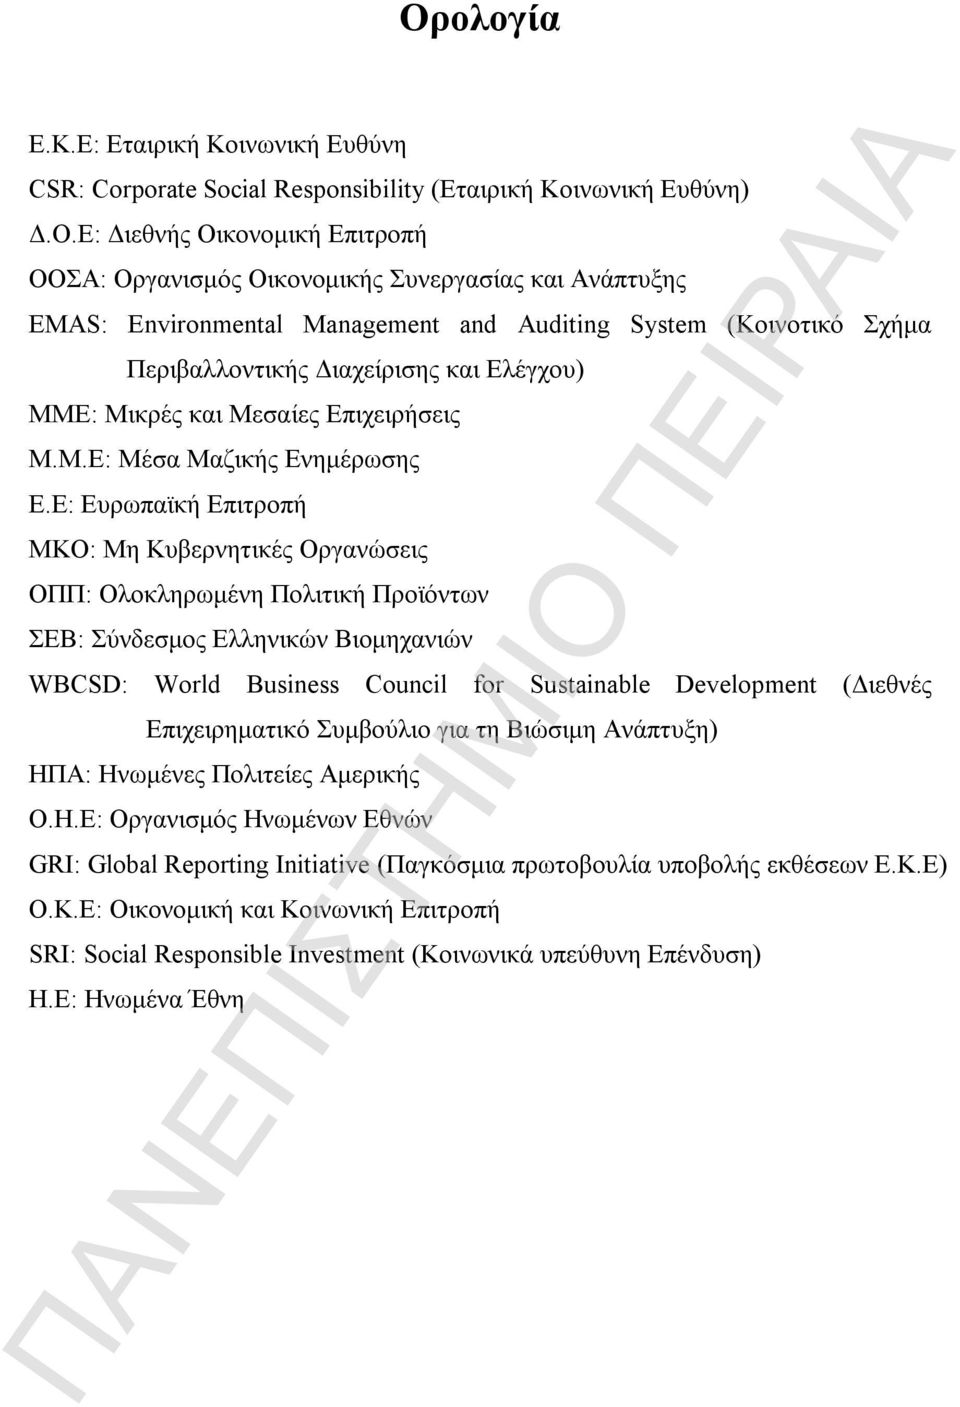 Ε: Ευρωπαϊκή Επιτροπή ΜΚΟ: Μη Κυβερνητικές Οργανώσεις ΟΠΠ: Ολοκληρωμένη Πολιτική Προϊόντων ΣΕΒ: Σύνδεσμος Ελληνικών Βιομηχανιών WBCSD: World Business Council for Sustainable Development (Διεθνές